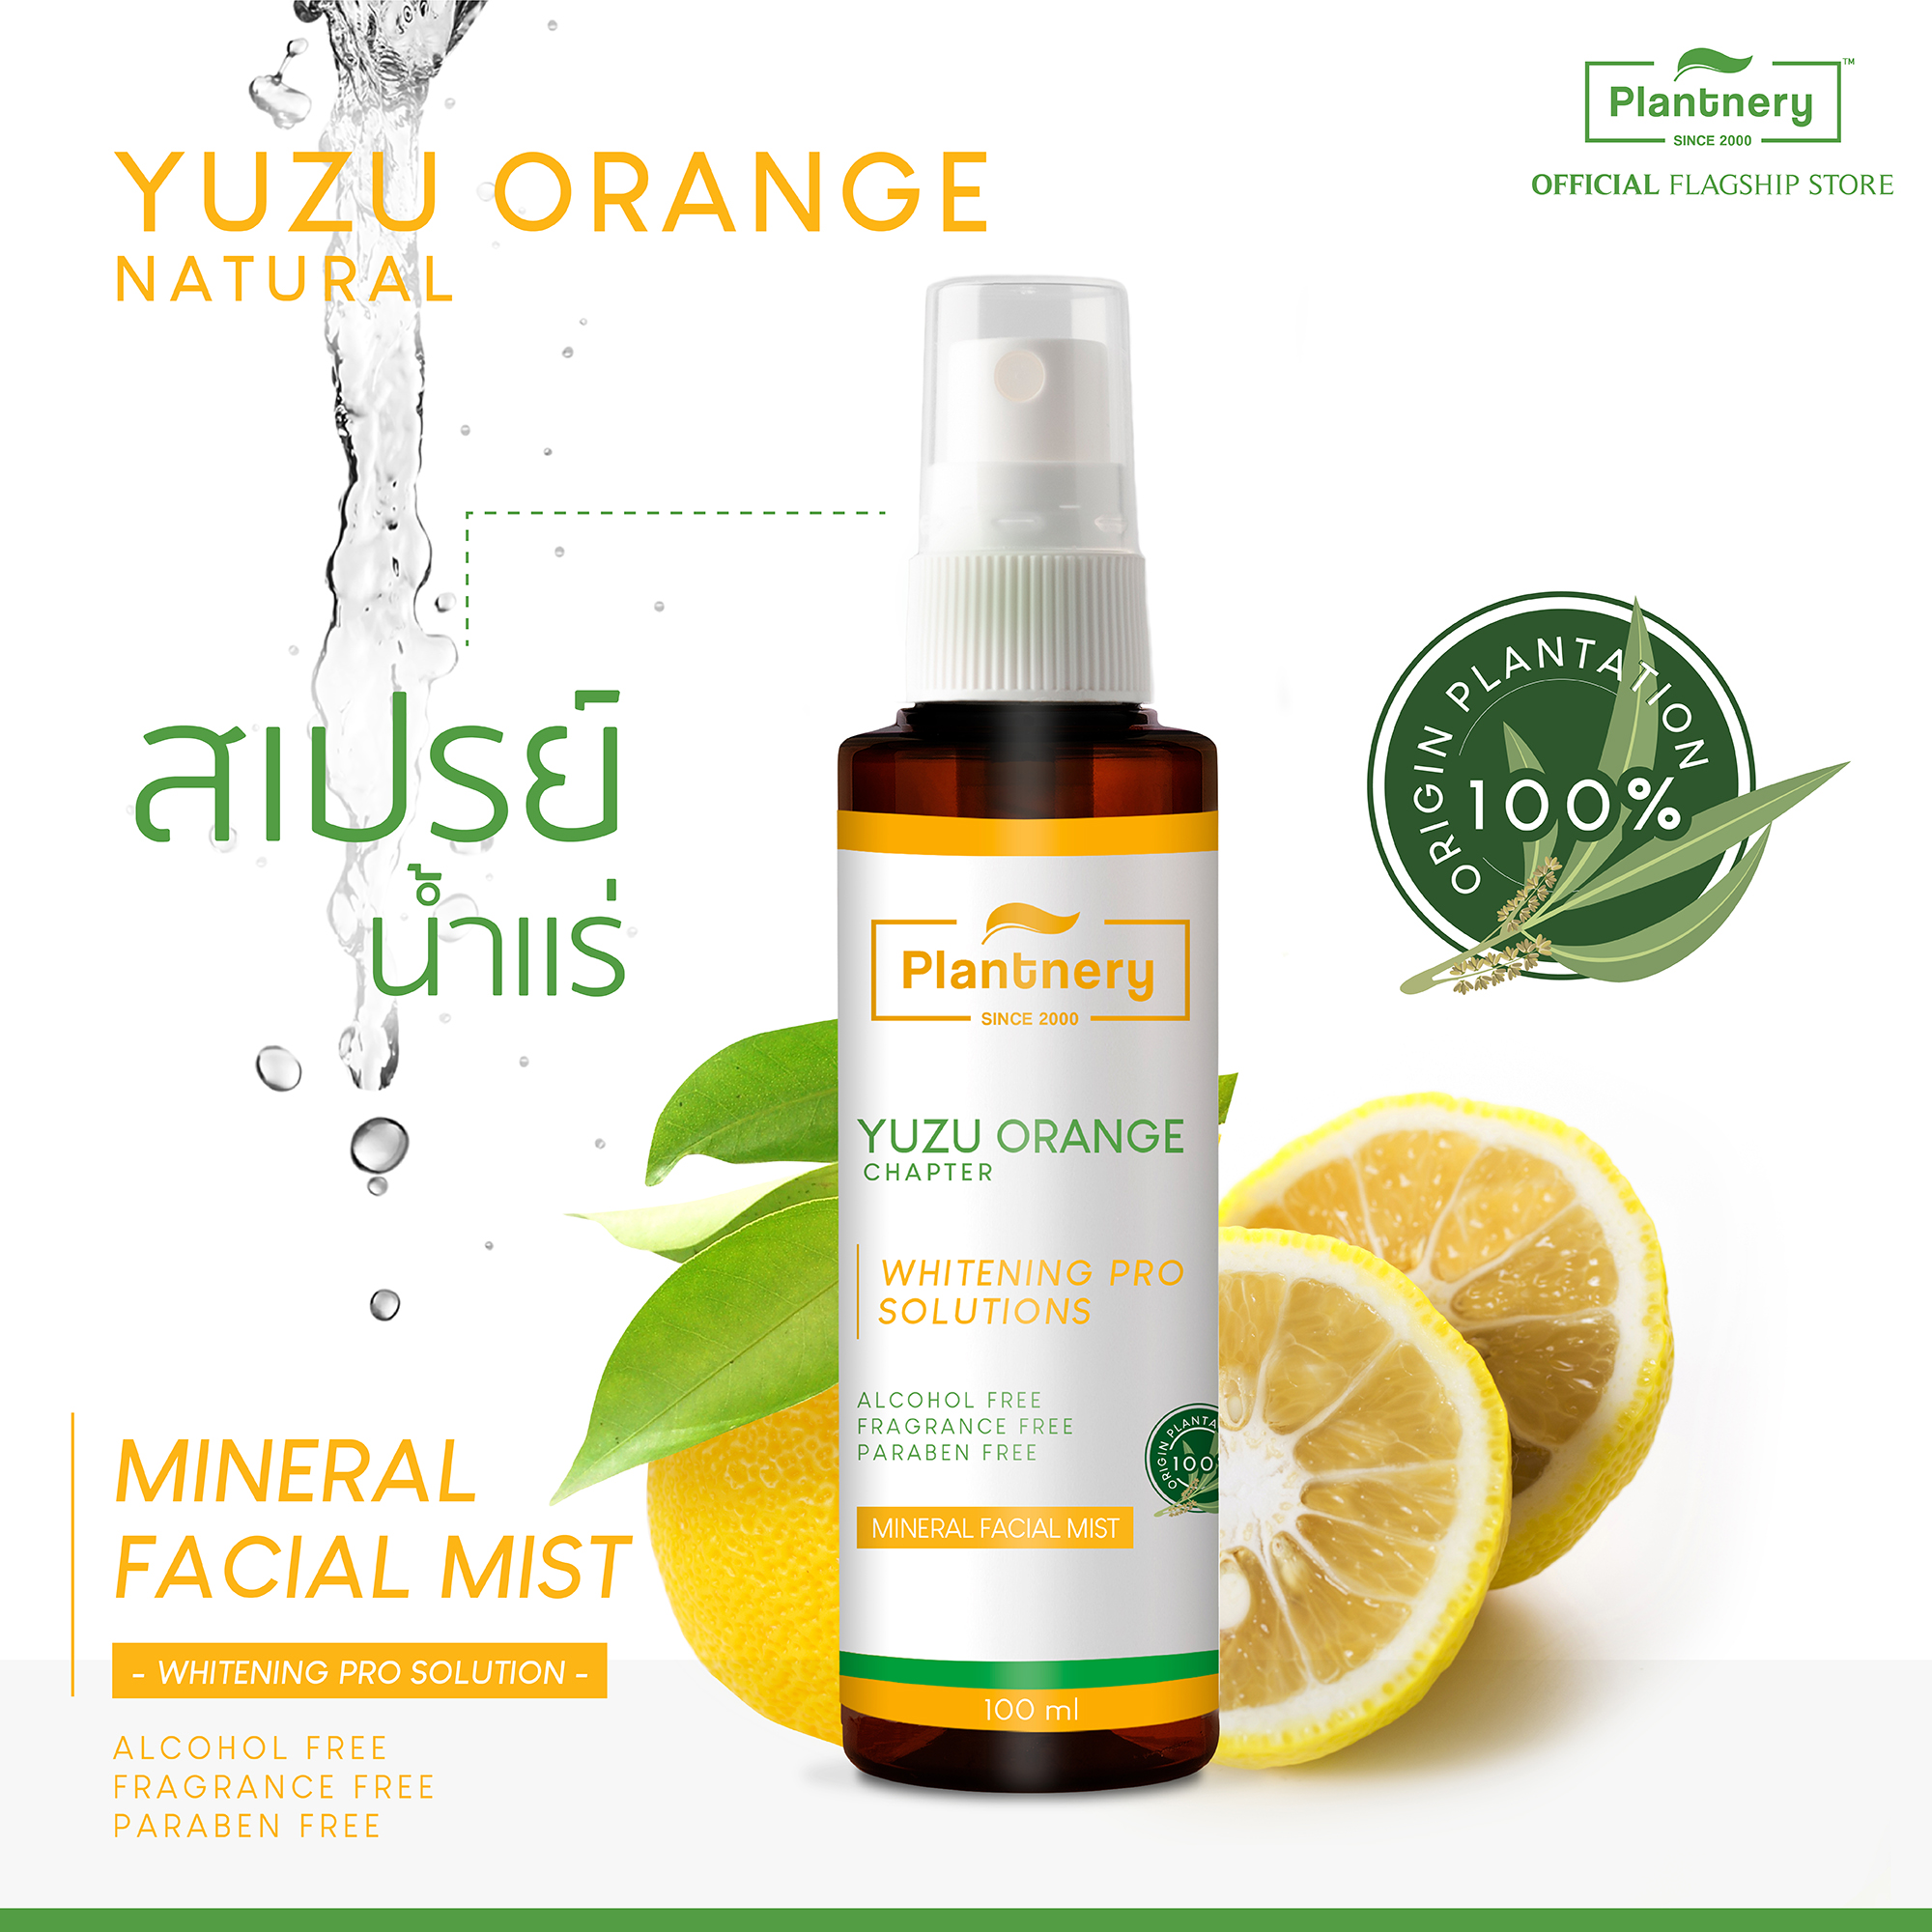 Plantnery Yuzu Orange Mineral Facial Mist 100ml สเปรย์น้ำแร่ส้มยูซุ เพิ่มแร่ธาตุให้ผิว ฟื้นบำรุงผิวให้กลับสดใสแลดูสุขภาพดี และช่วยให้เครื่องสำอางติดทนนาน